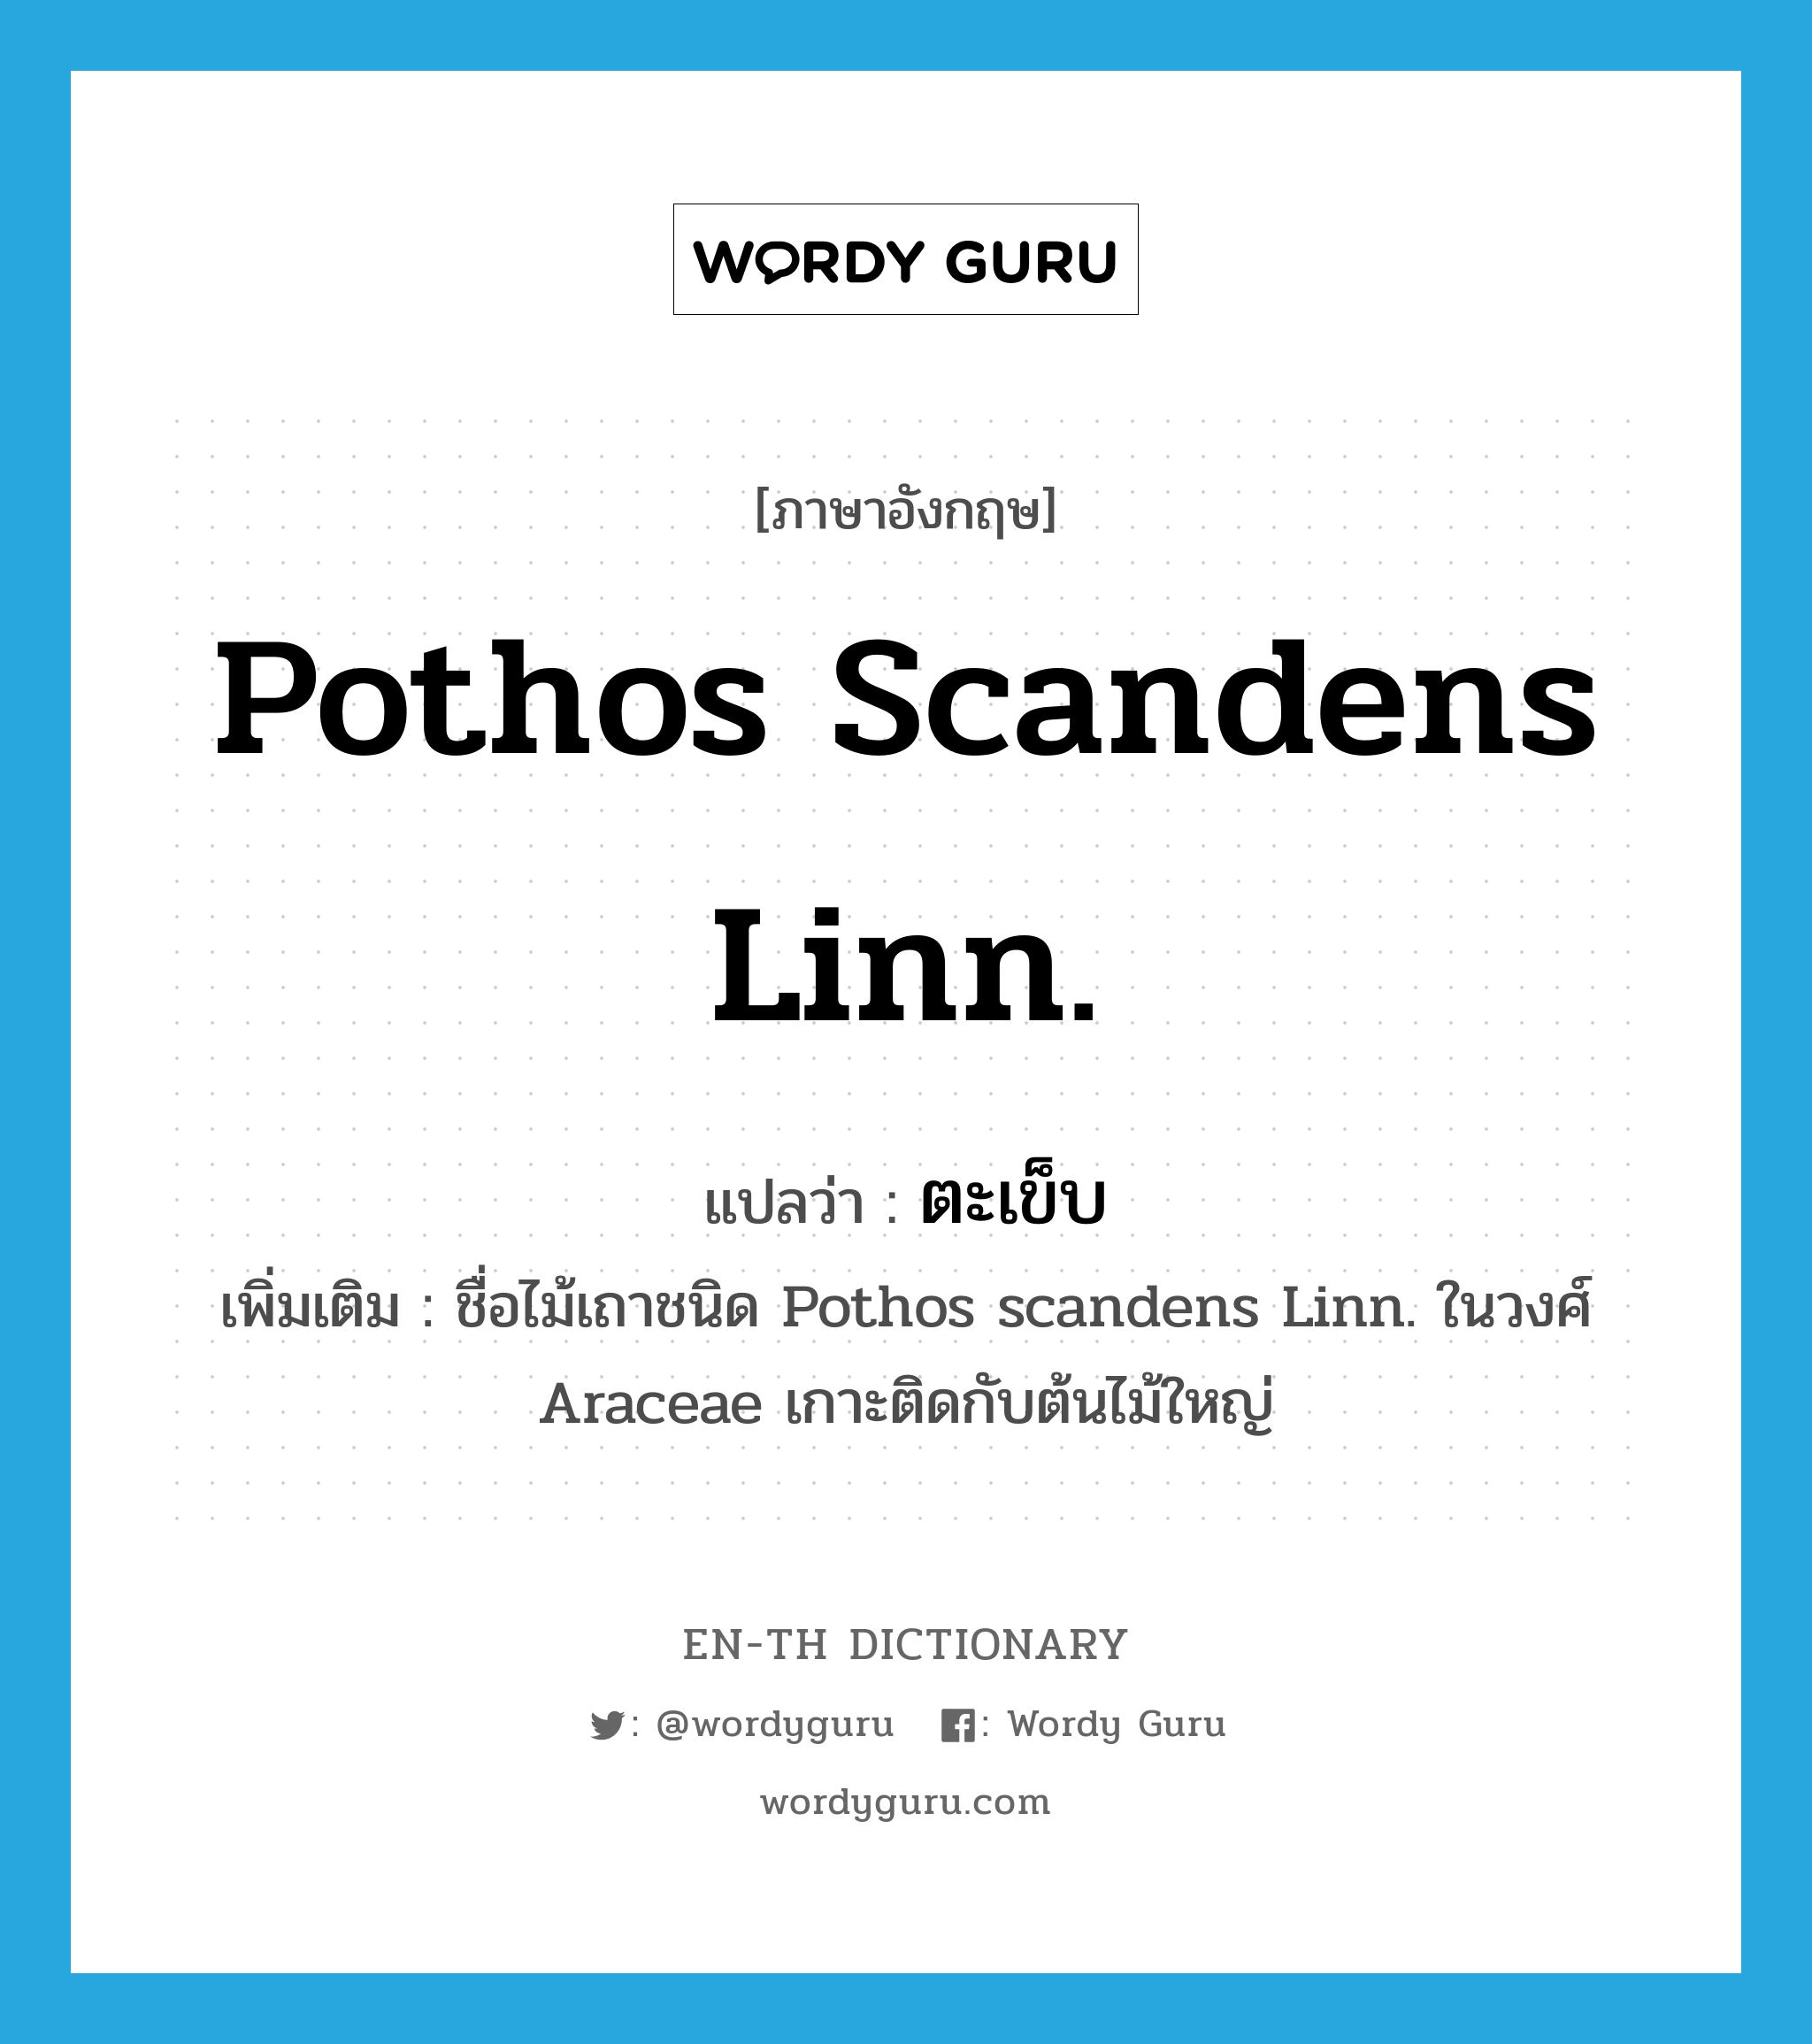 ตะเข็บ ภาษาอังกฤษ?, คำศัพท์ภาษาอังกฤษ ตะเข็บ แปลว่า Pothos scandens Linn. ประเภท N เพิ่มเติม ชื่อไม้เถาชนิด Pothos scandens Linn. ในวงศ์ Araceae เกาะติดกับต้นไม้ใหญ่ หมวด N